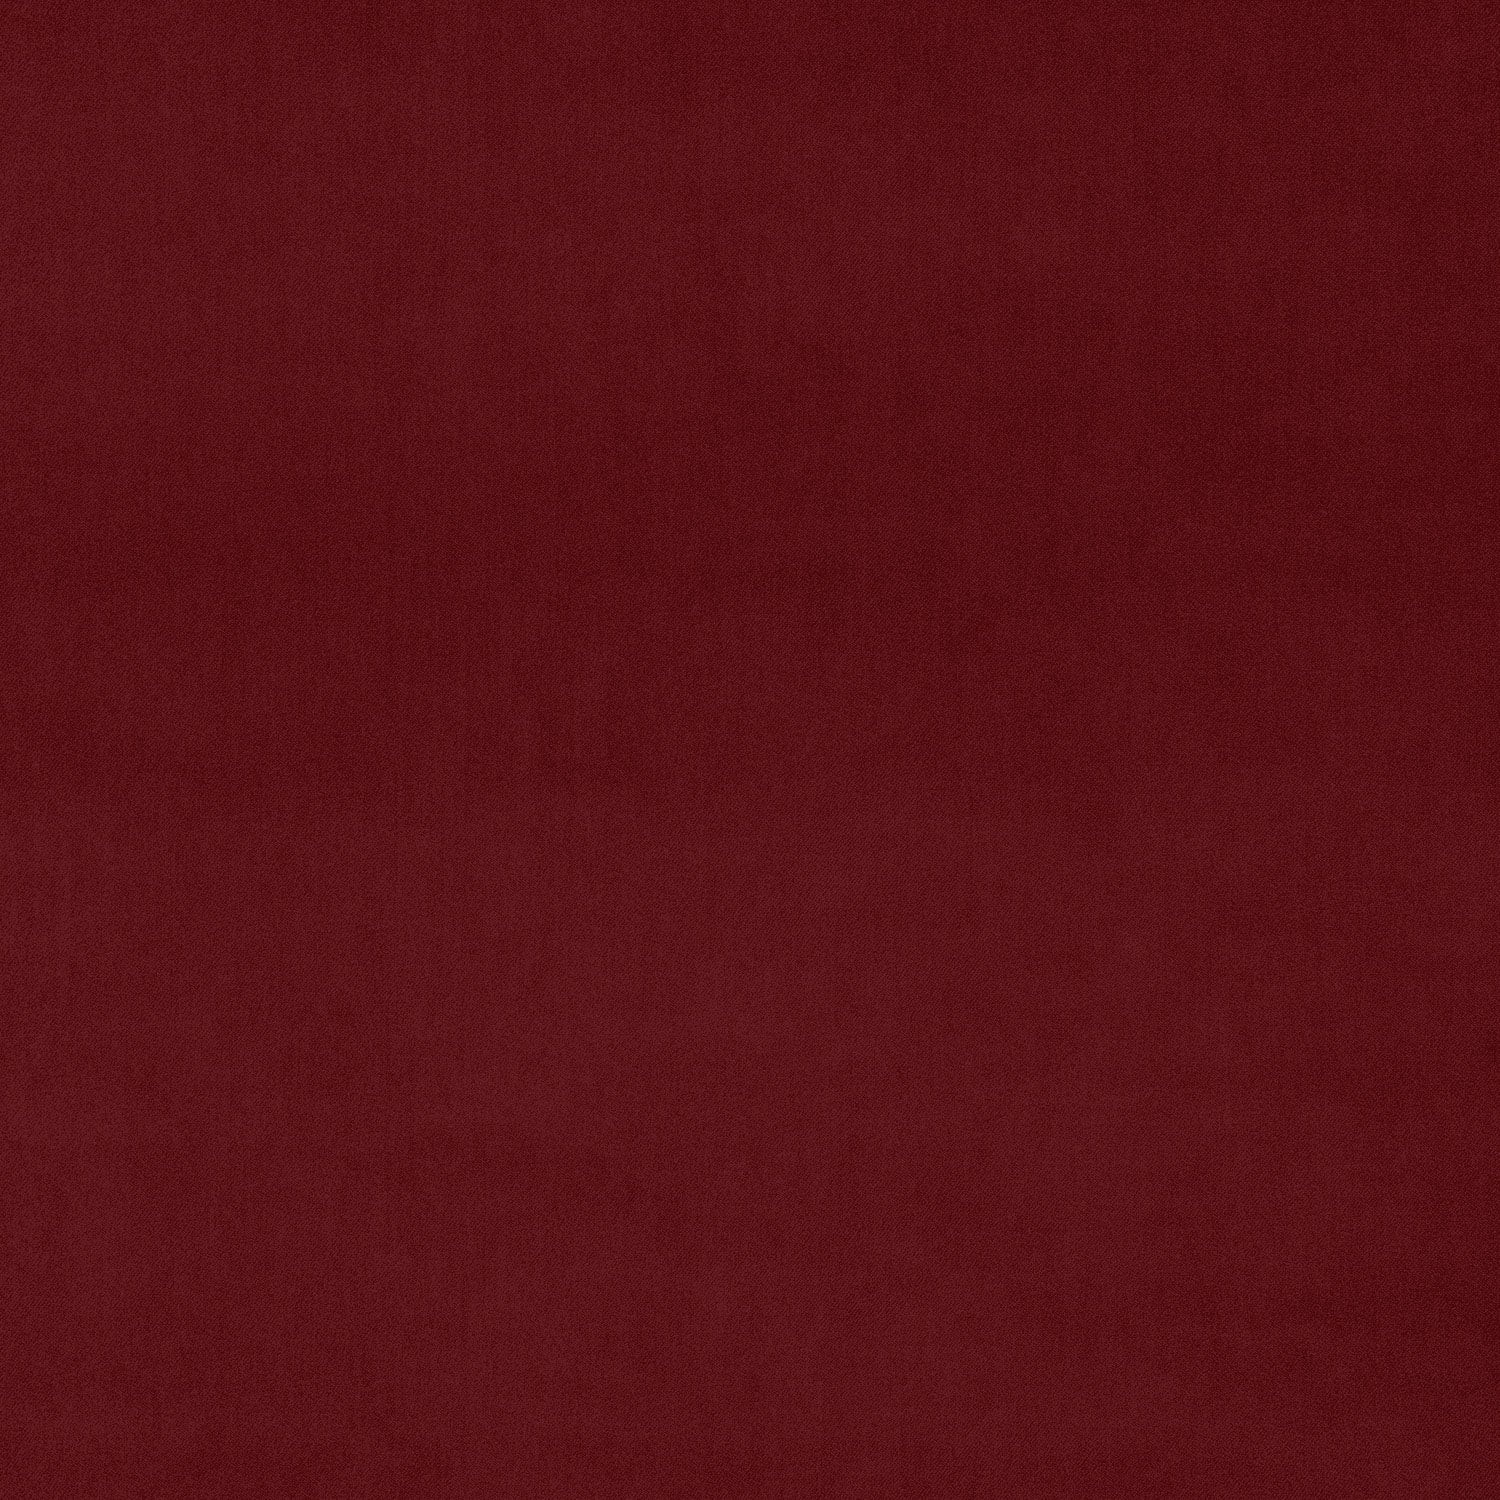 Omega - Crimson, Velvet Upholstery Fabric